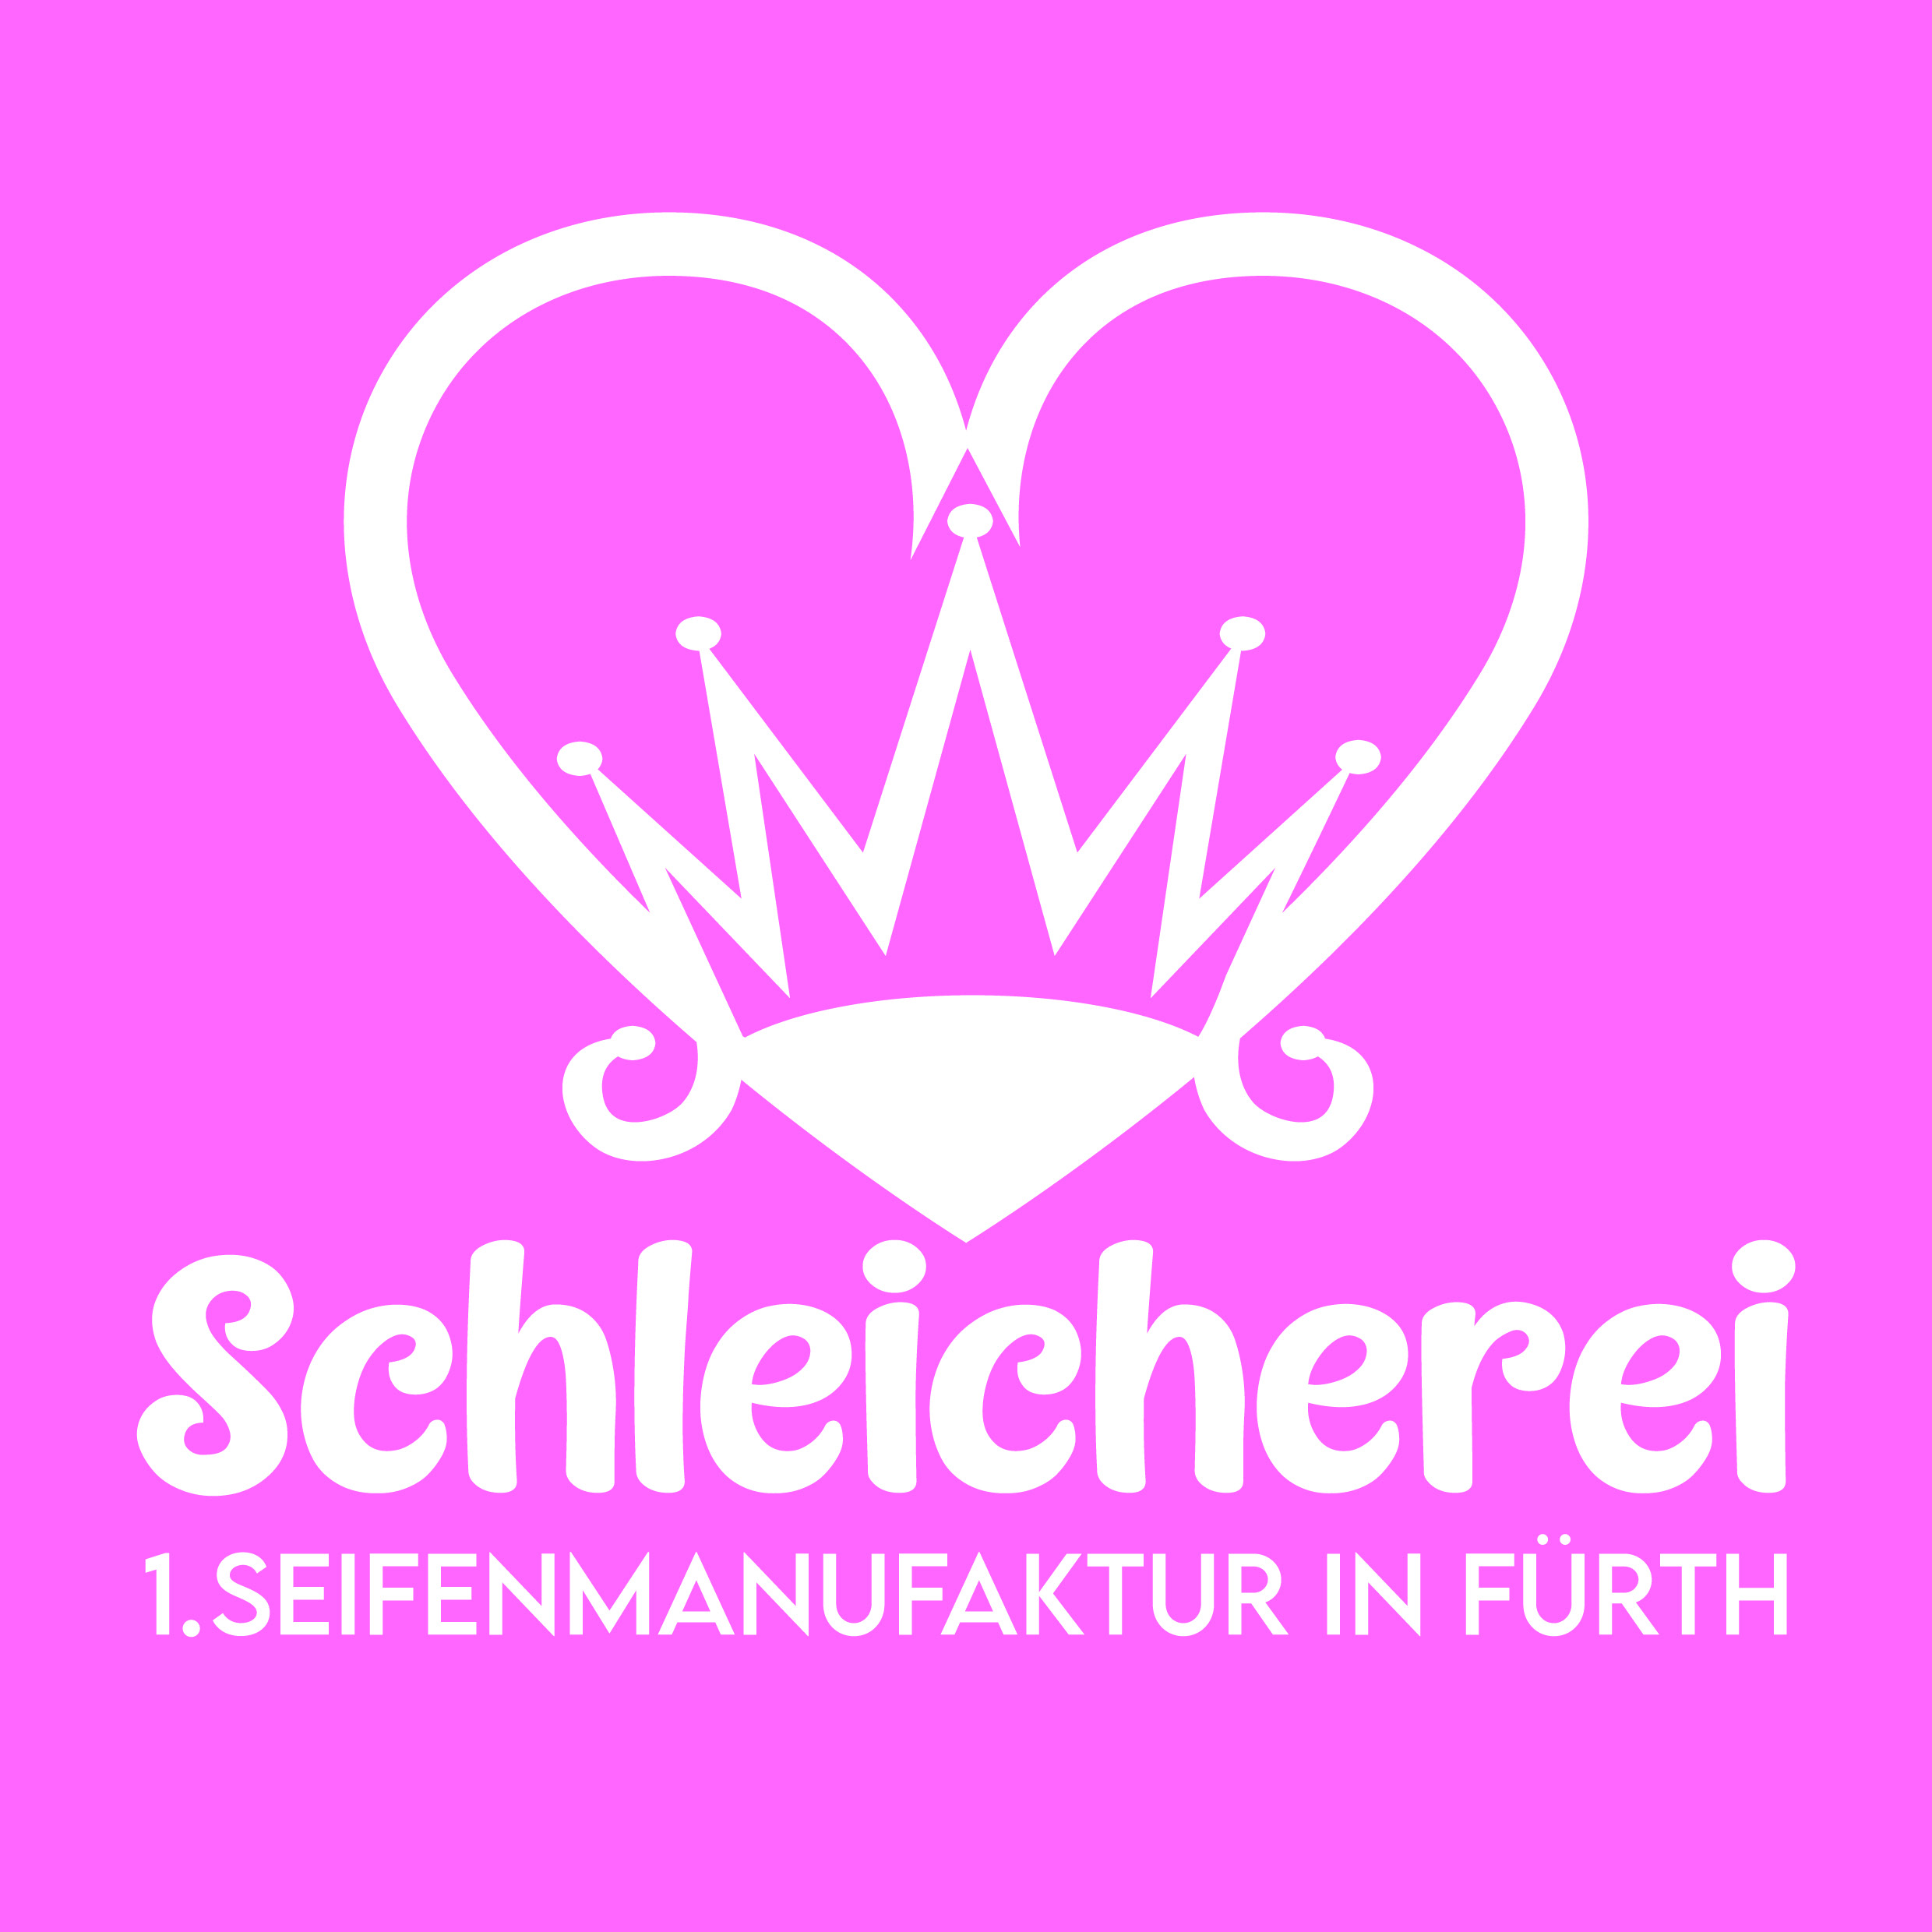 Schleicherei Logo rosa hintergrund